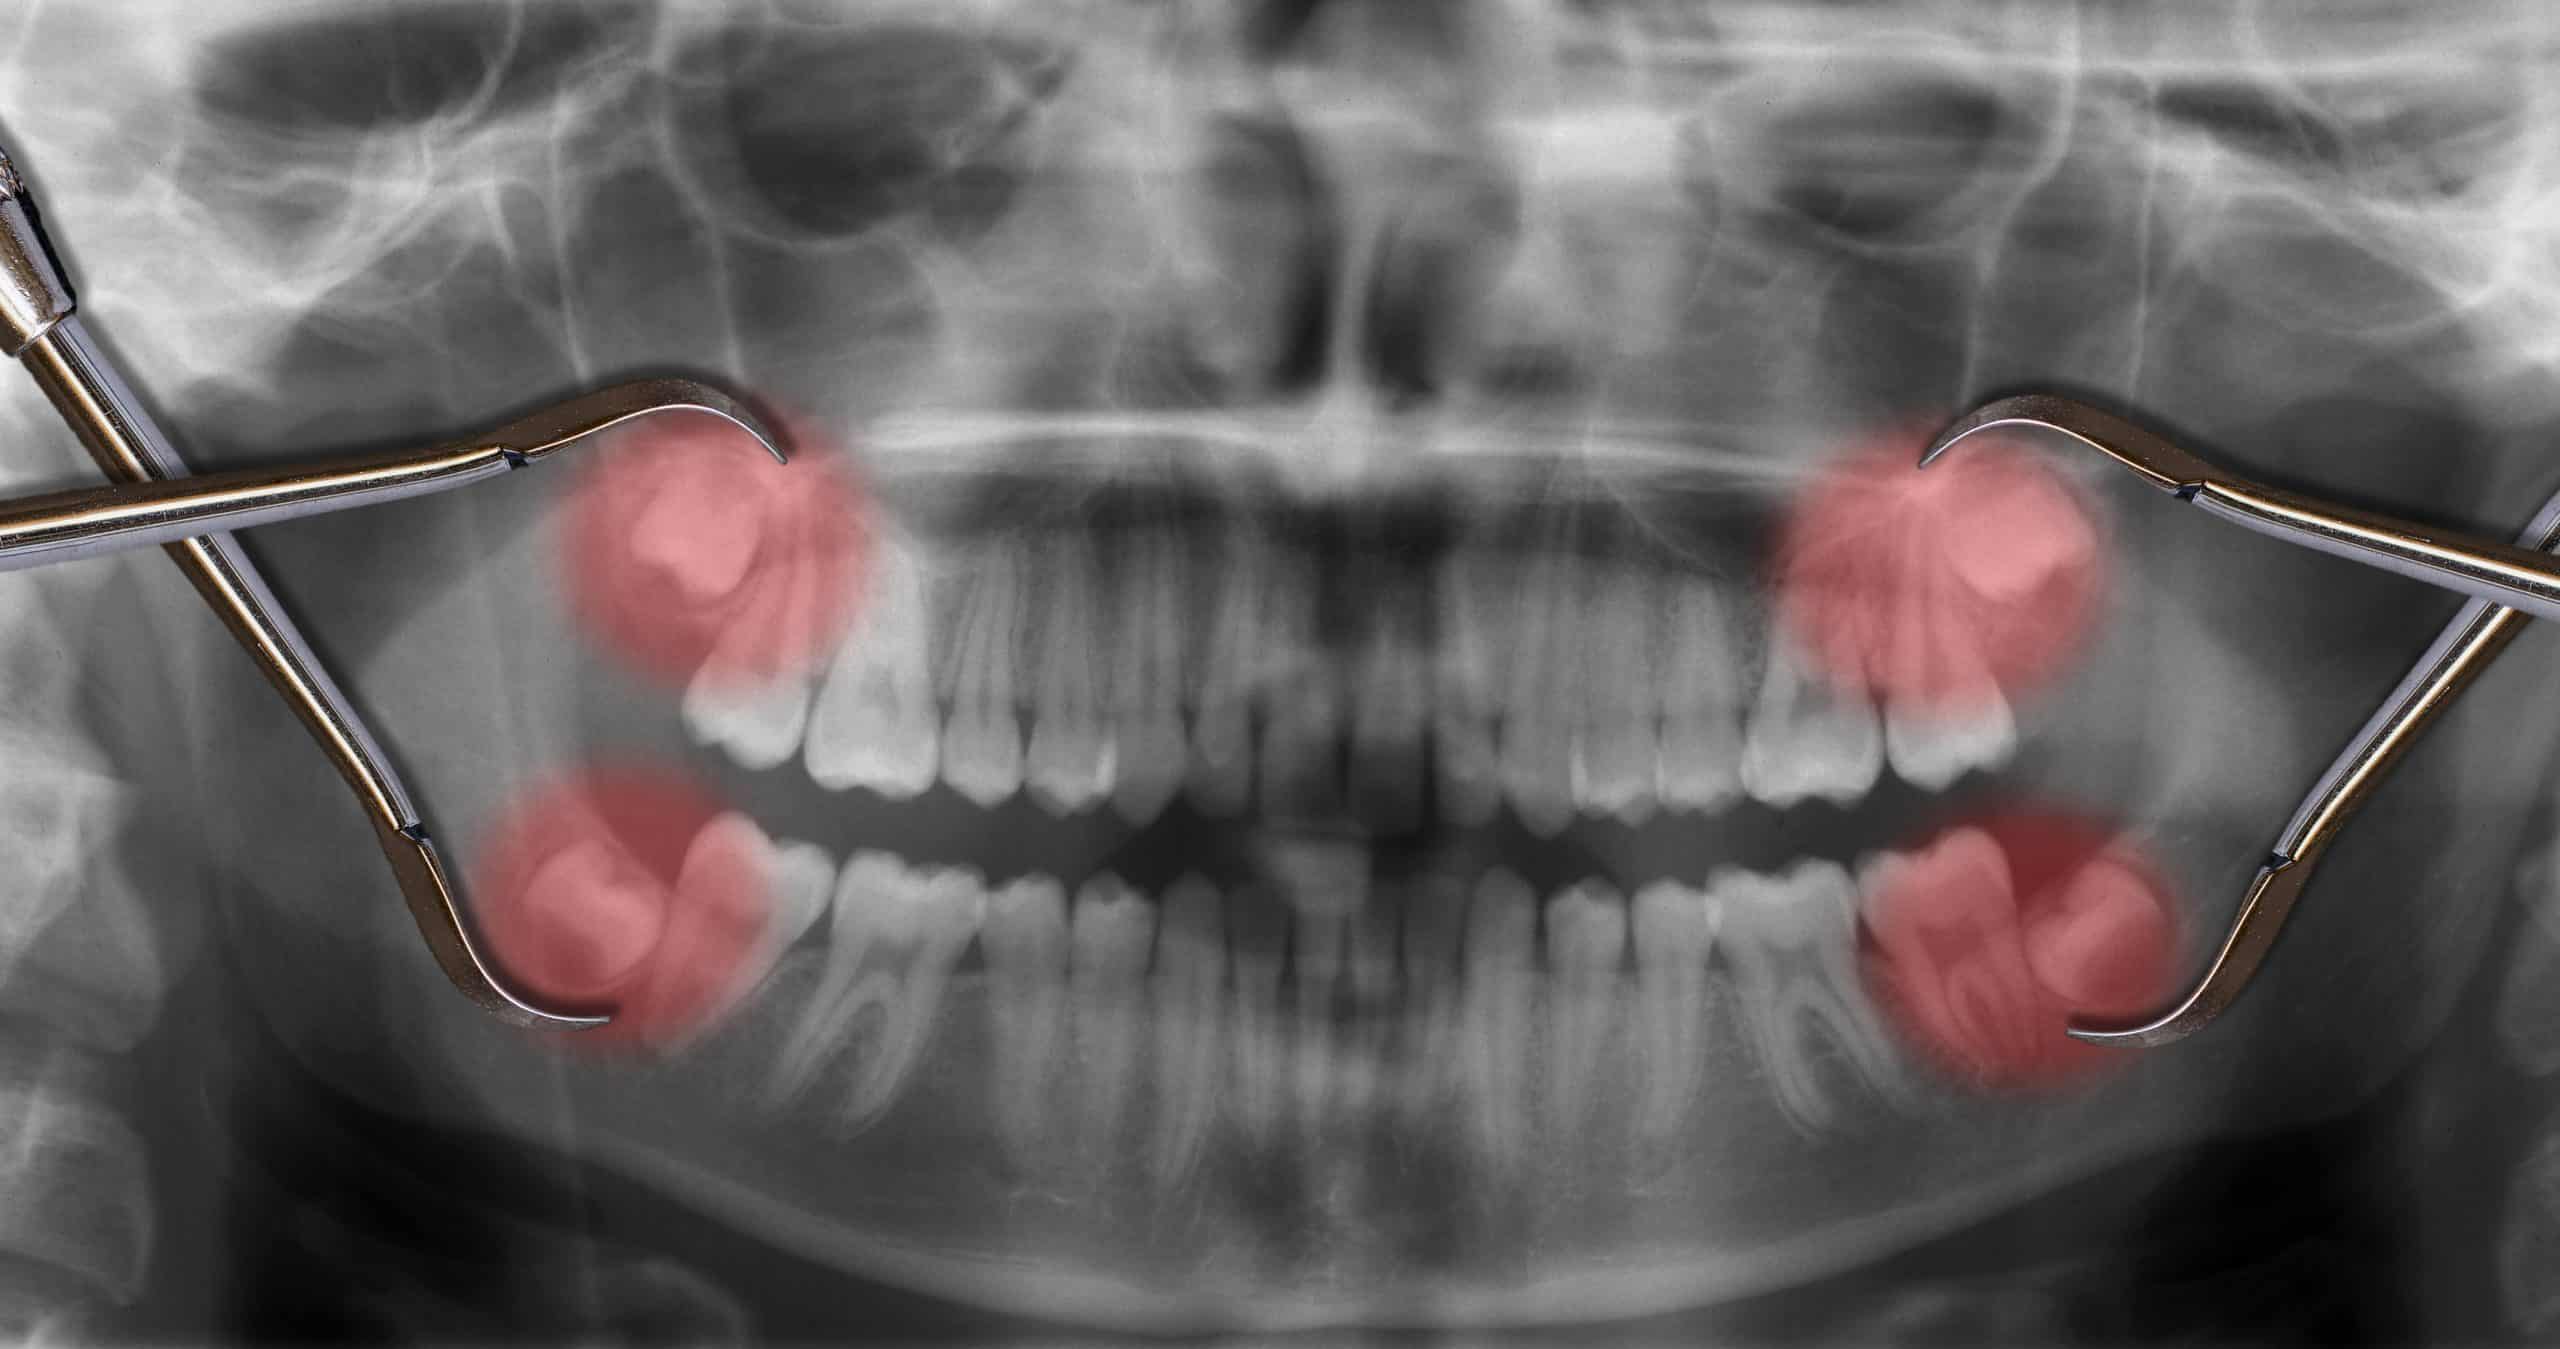 xray showing wisdom teeth